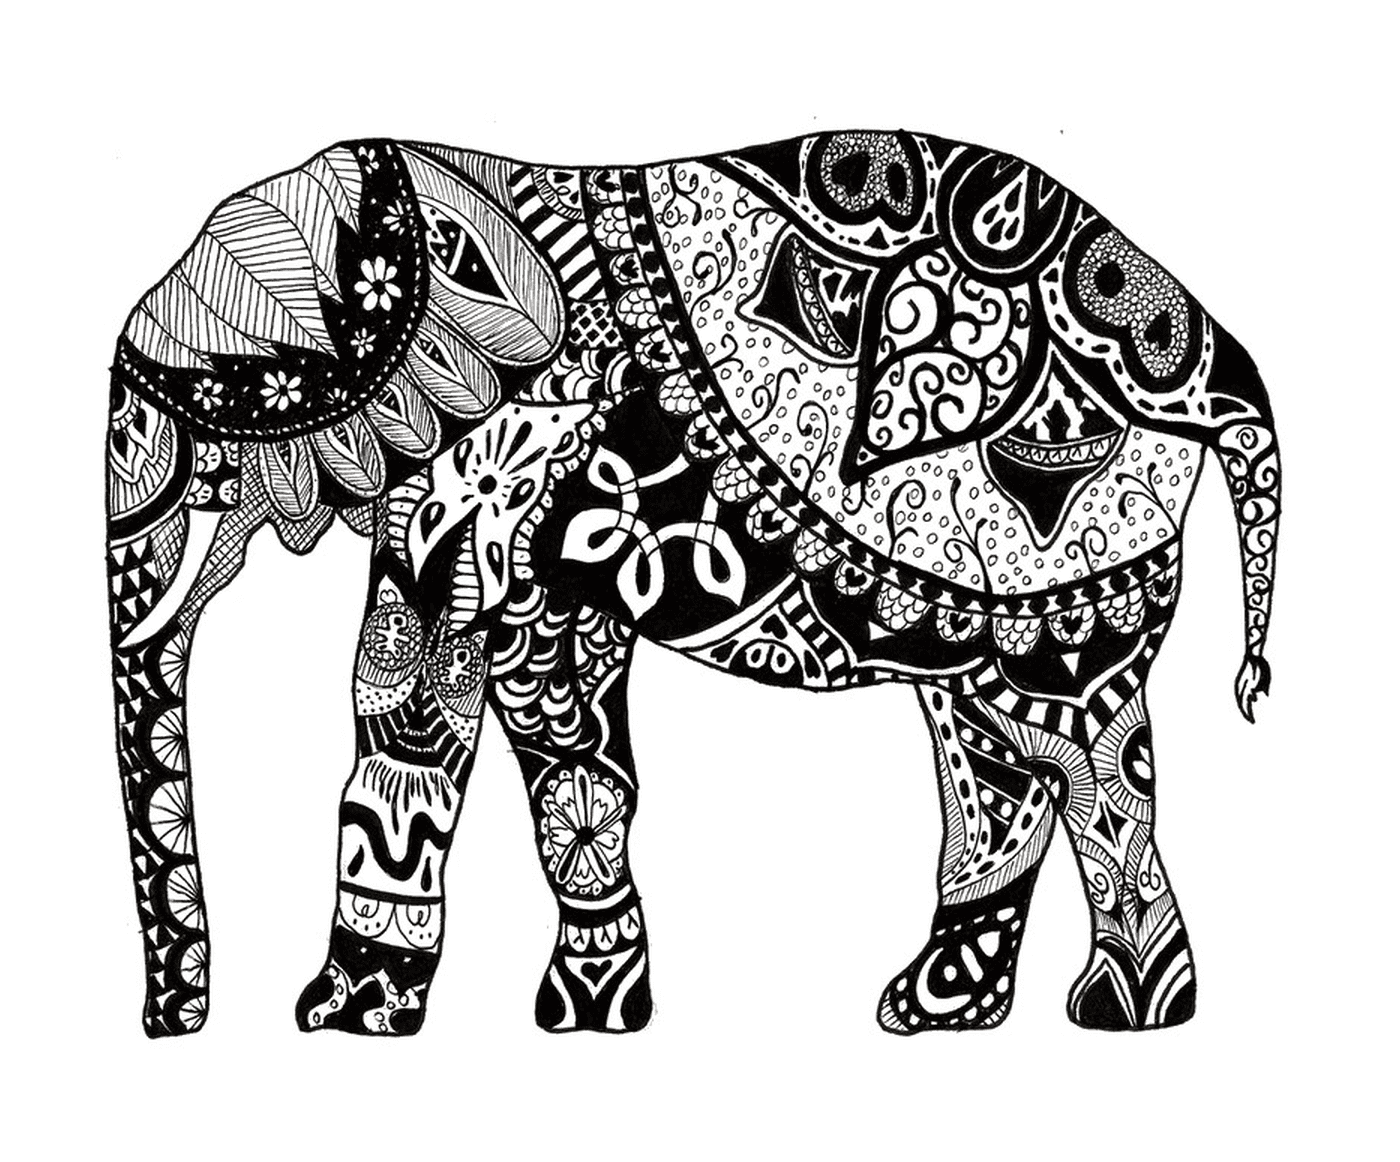   Un éléphant avec de nombreux mandalas sur son corps 